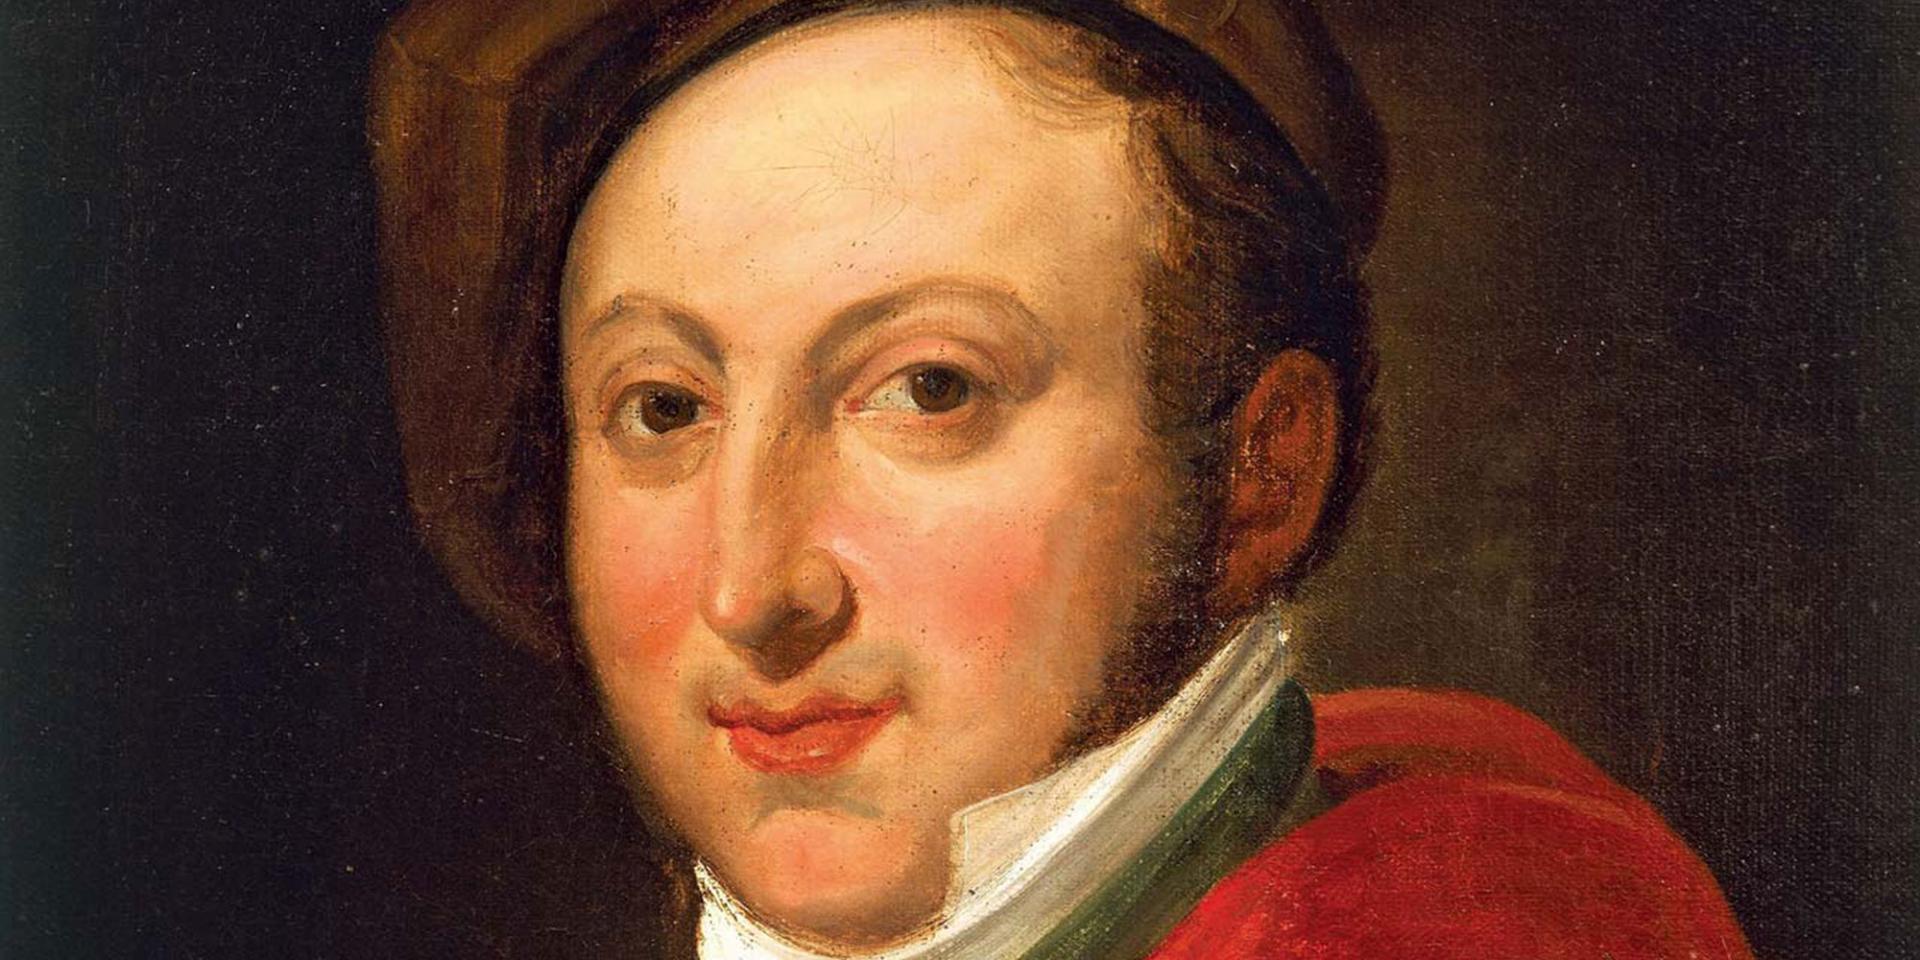 Portrait of Gioachino Rossini. Oil on canvas, unknown artist.